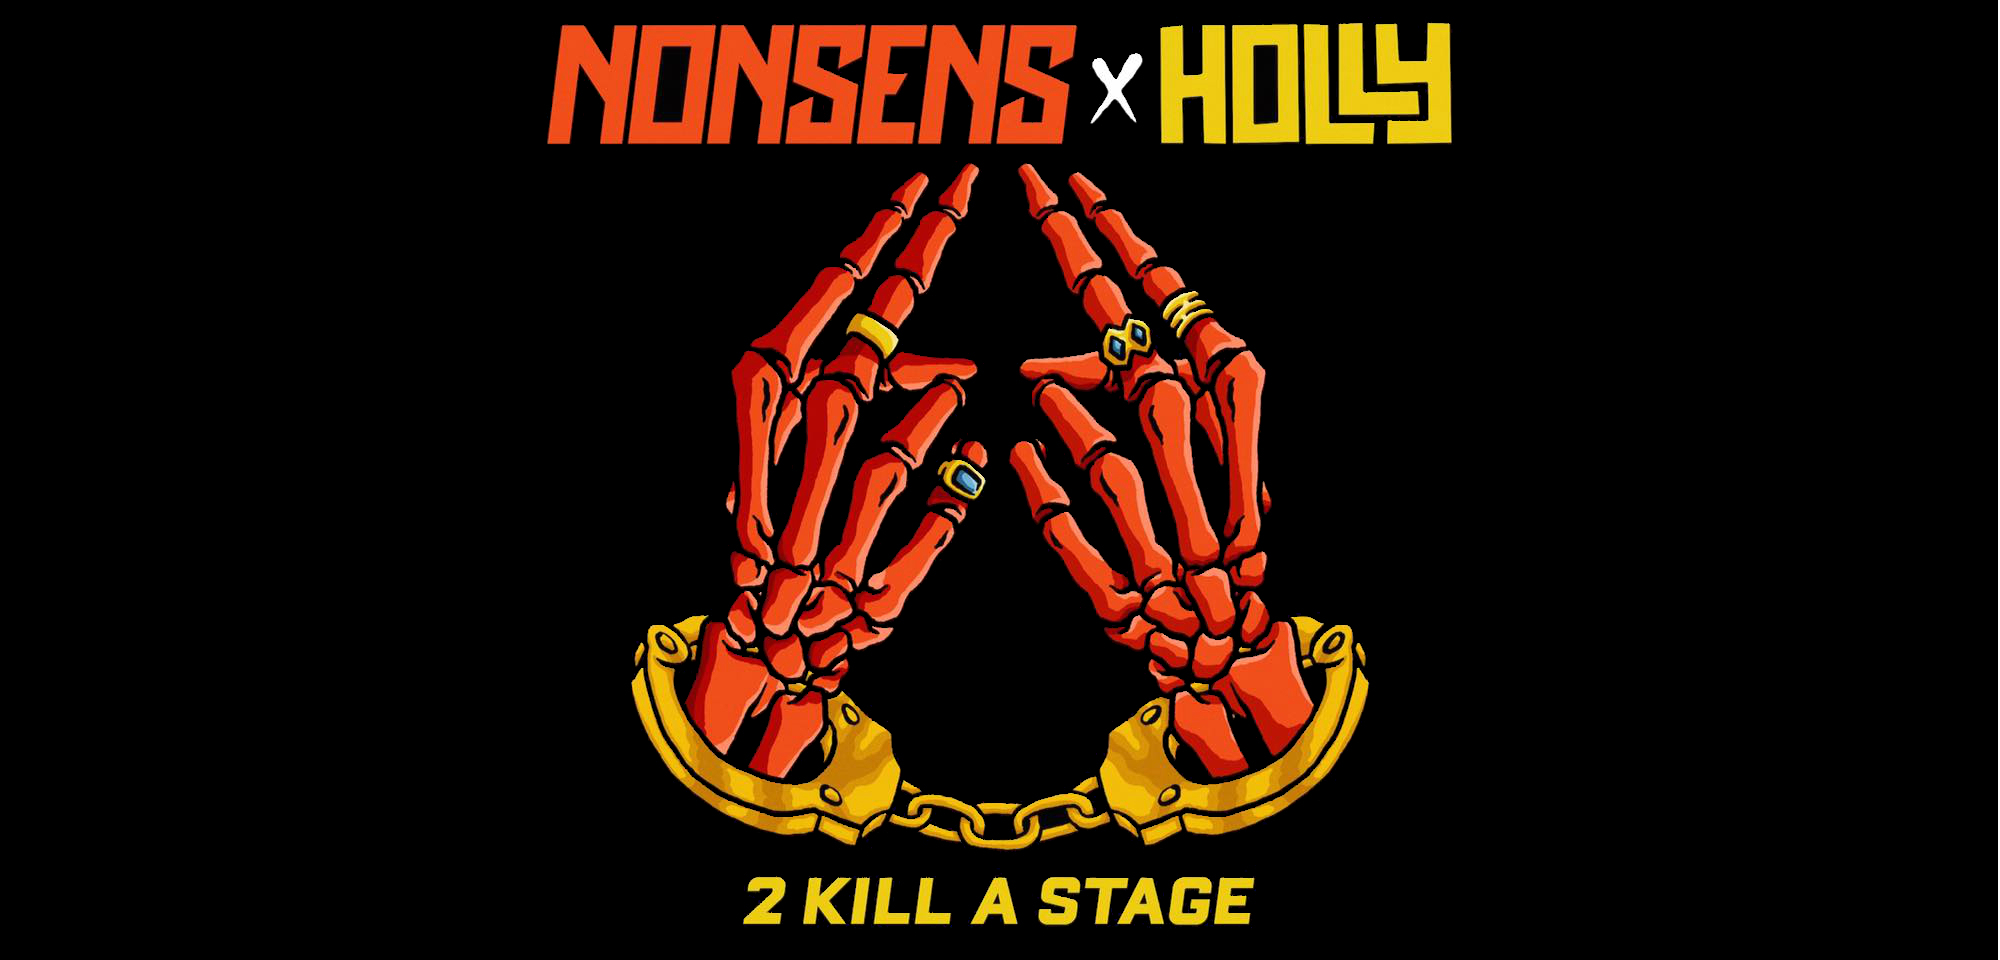 Nonsens 2 Kill A Stage